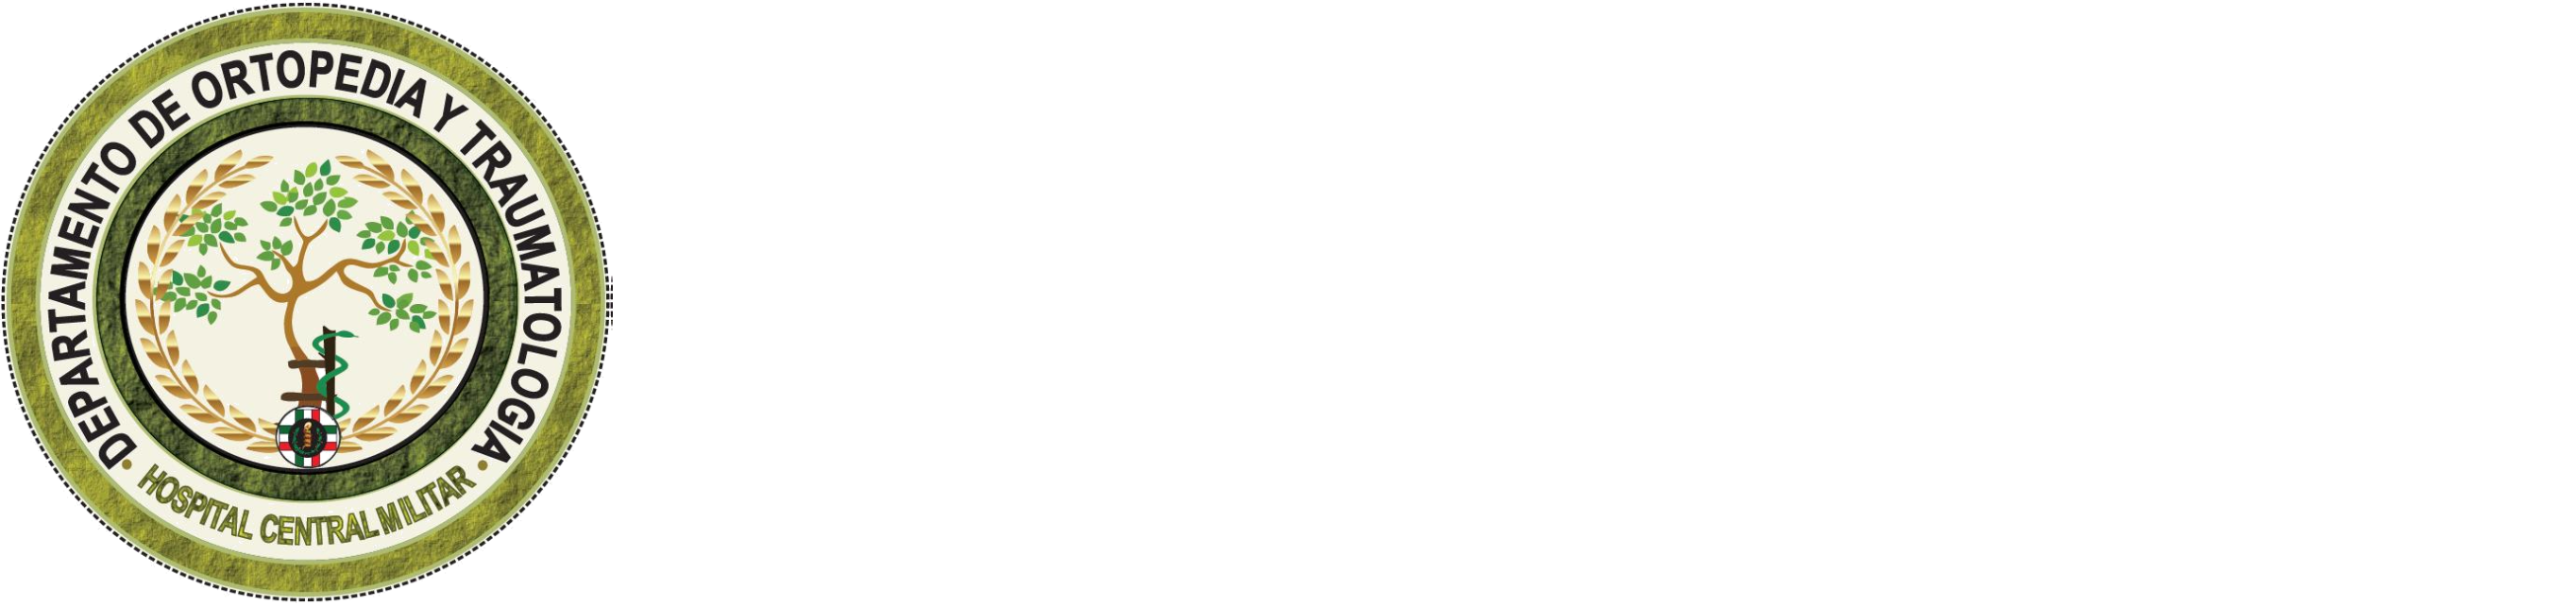 logo footer Dr. Rogelio García Cruz